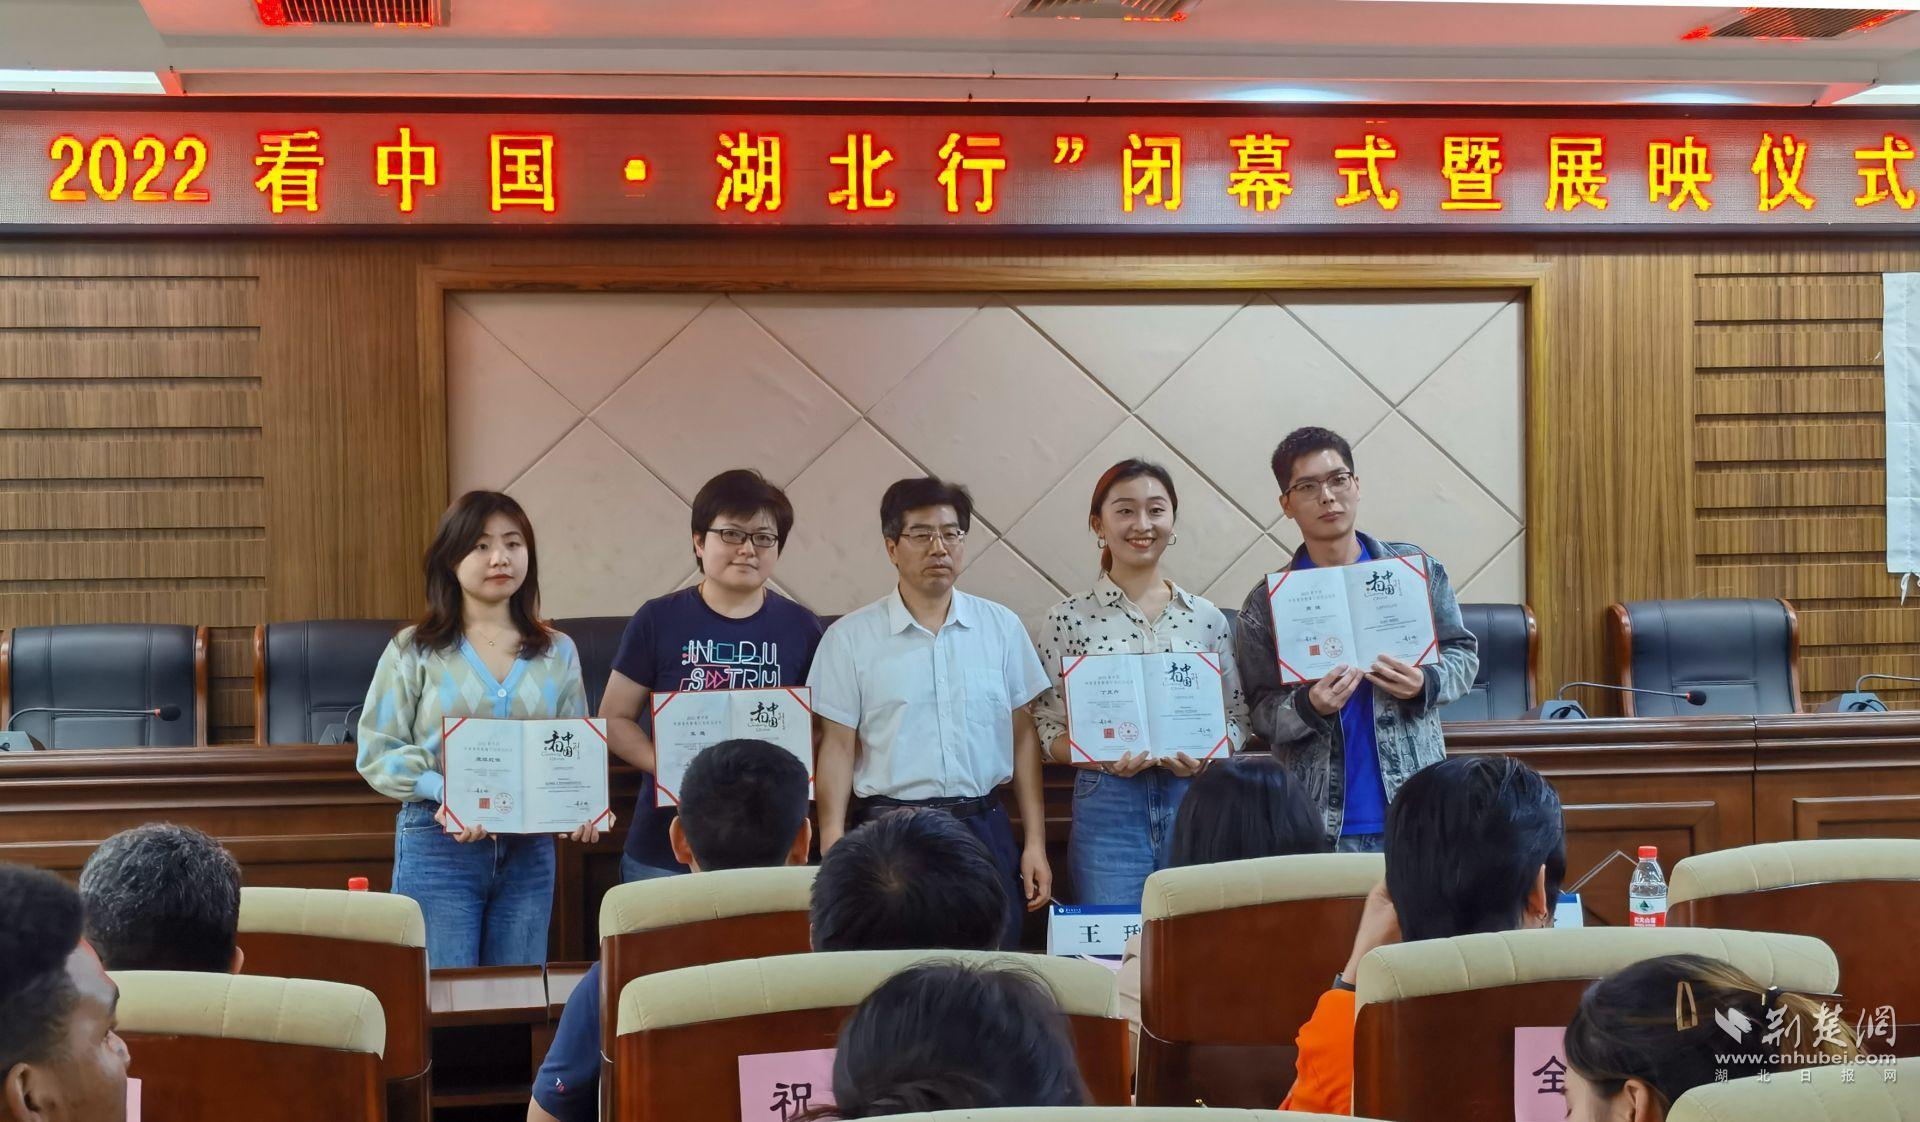 “2022看中国-外国青年影像计划·湖北行”展映仪式在武汉举行